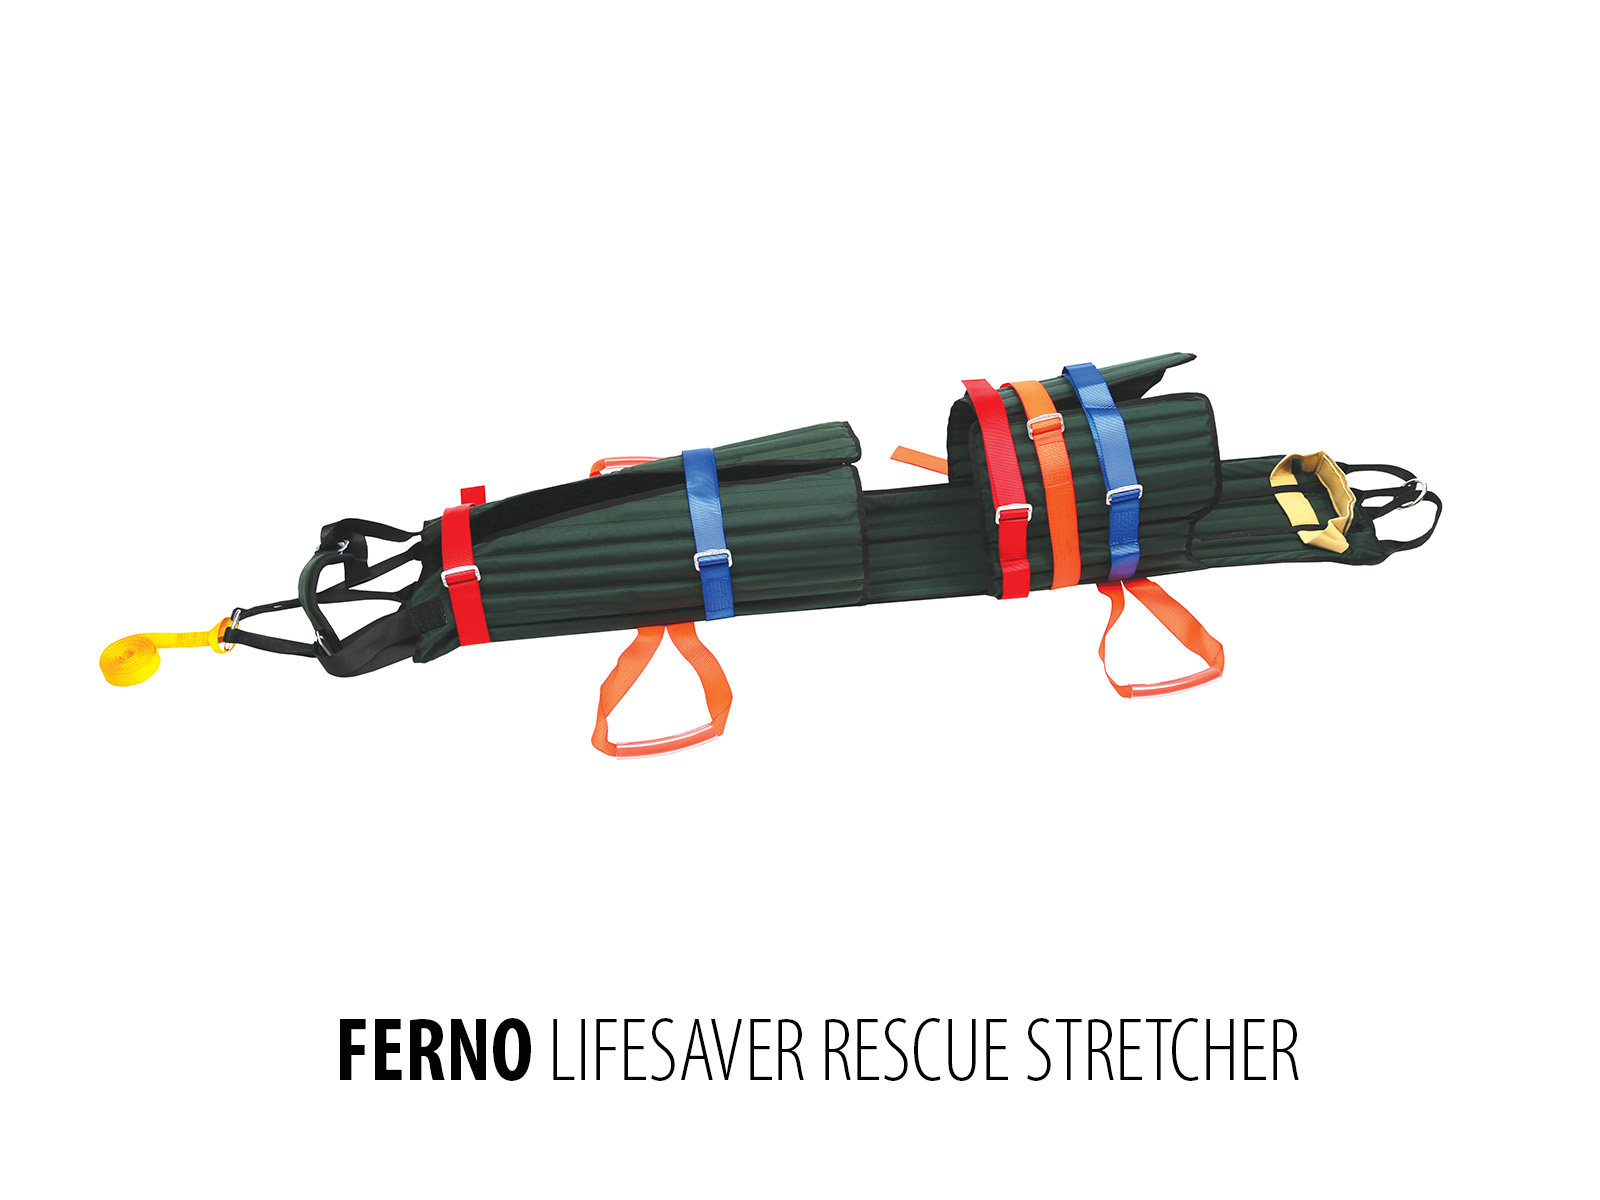 Ferno Lifesaver Rescue Stretcher